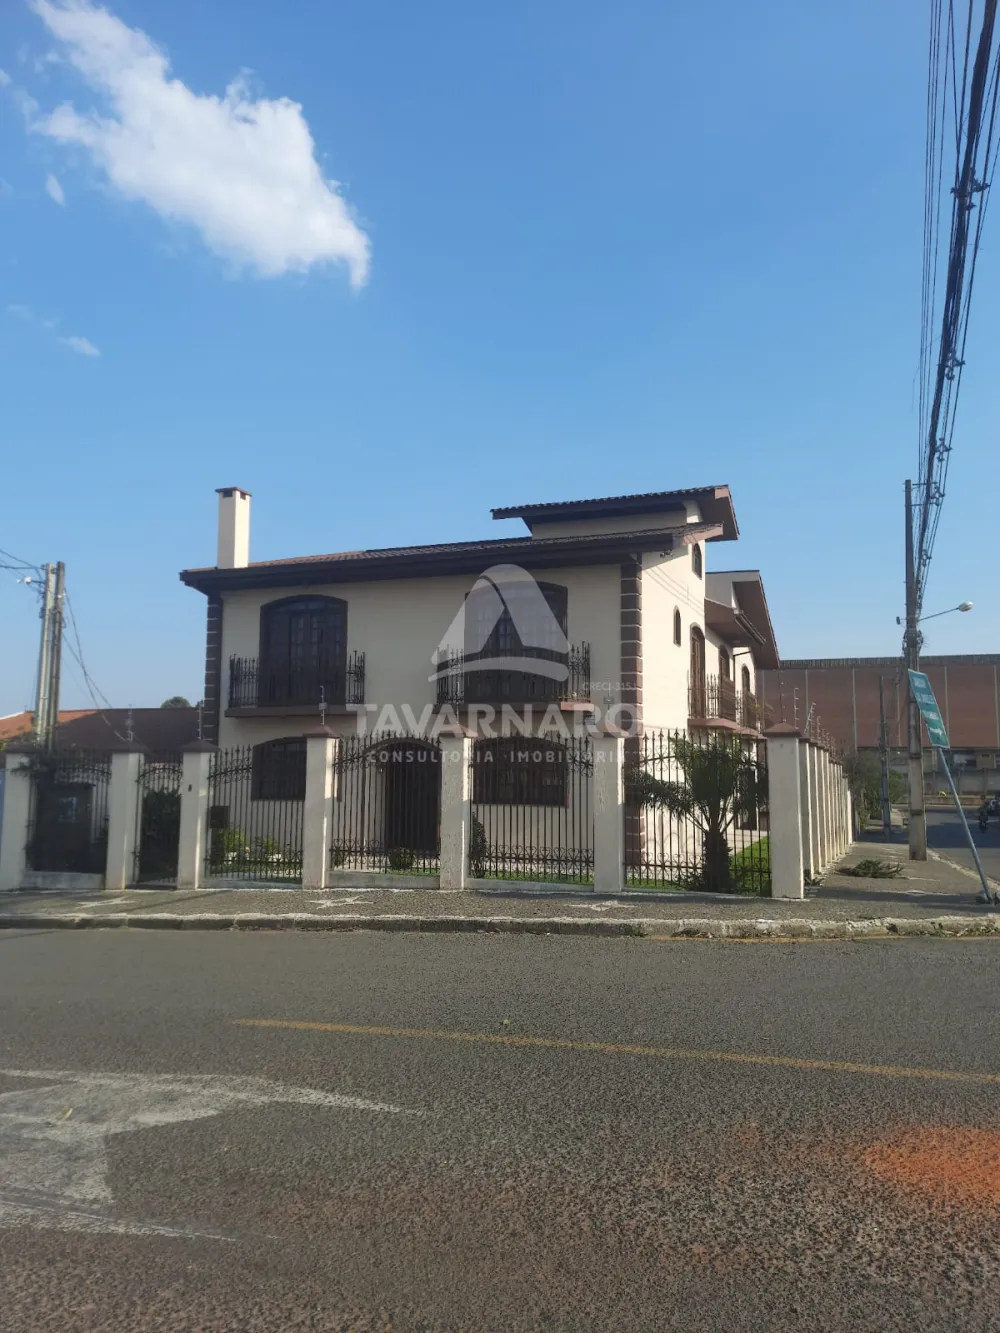 Comprar Casa / Padrão em Ponta Grossa R$ 1.250.000,00 - Foto 1